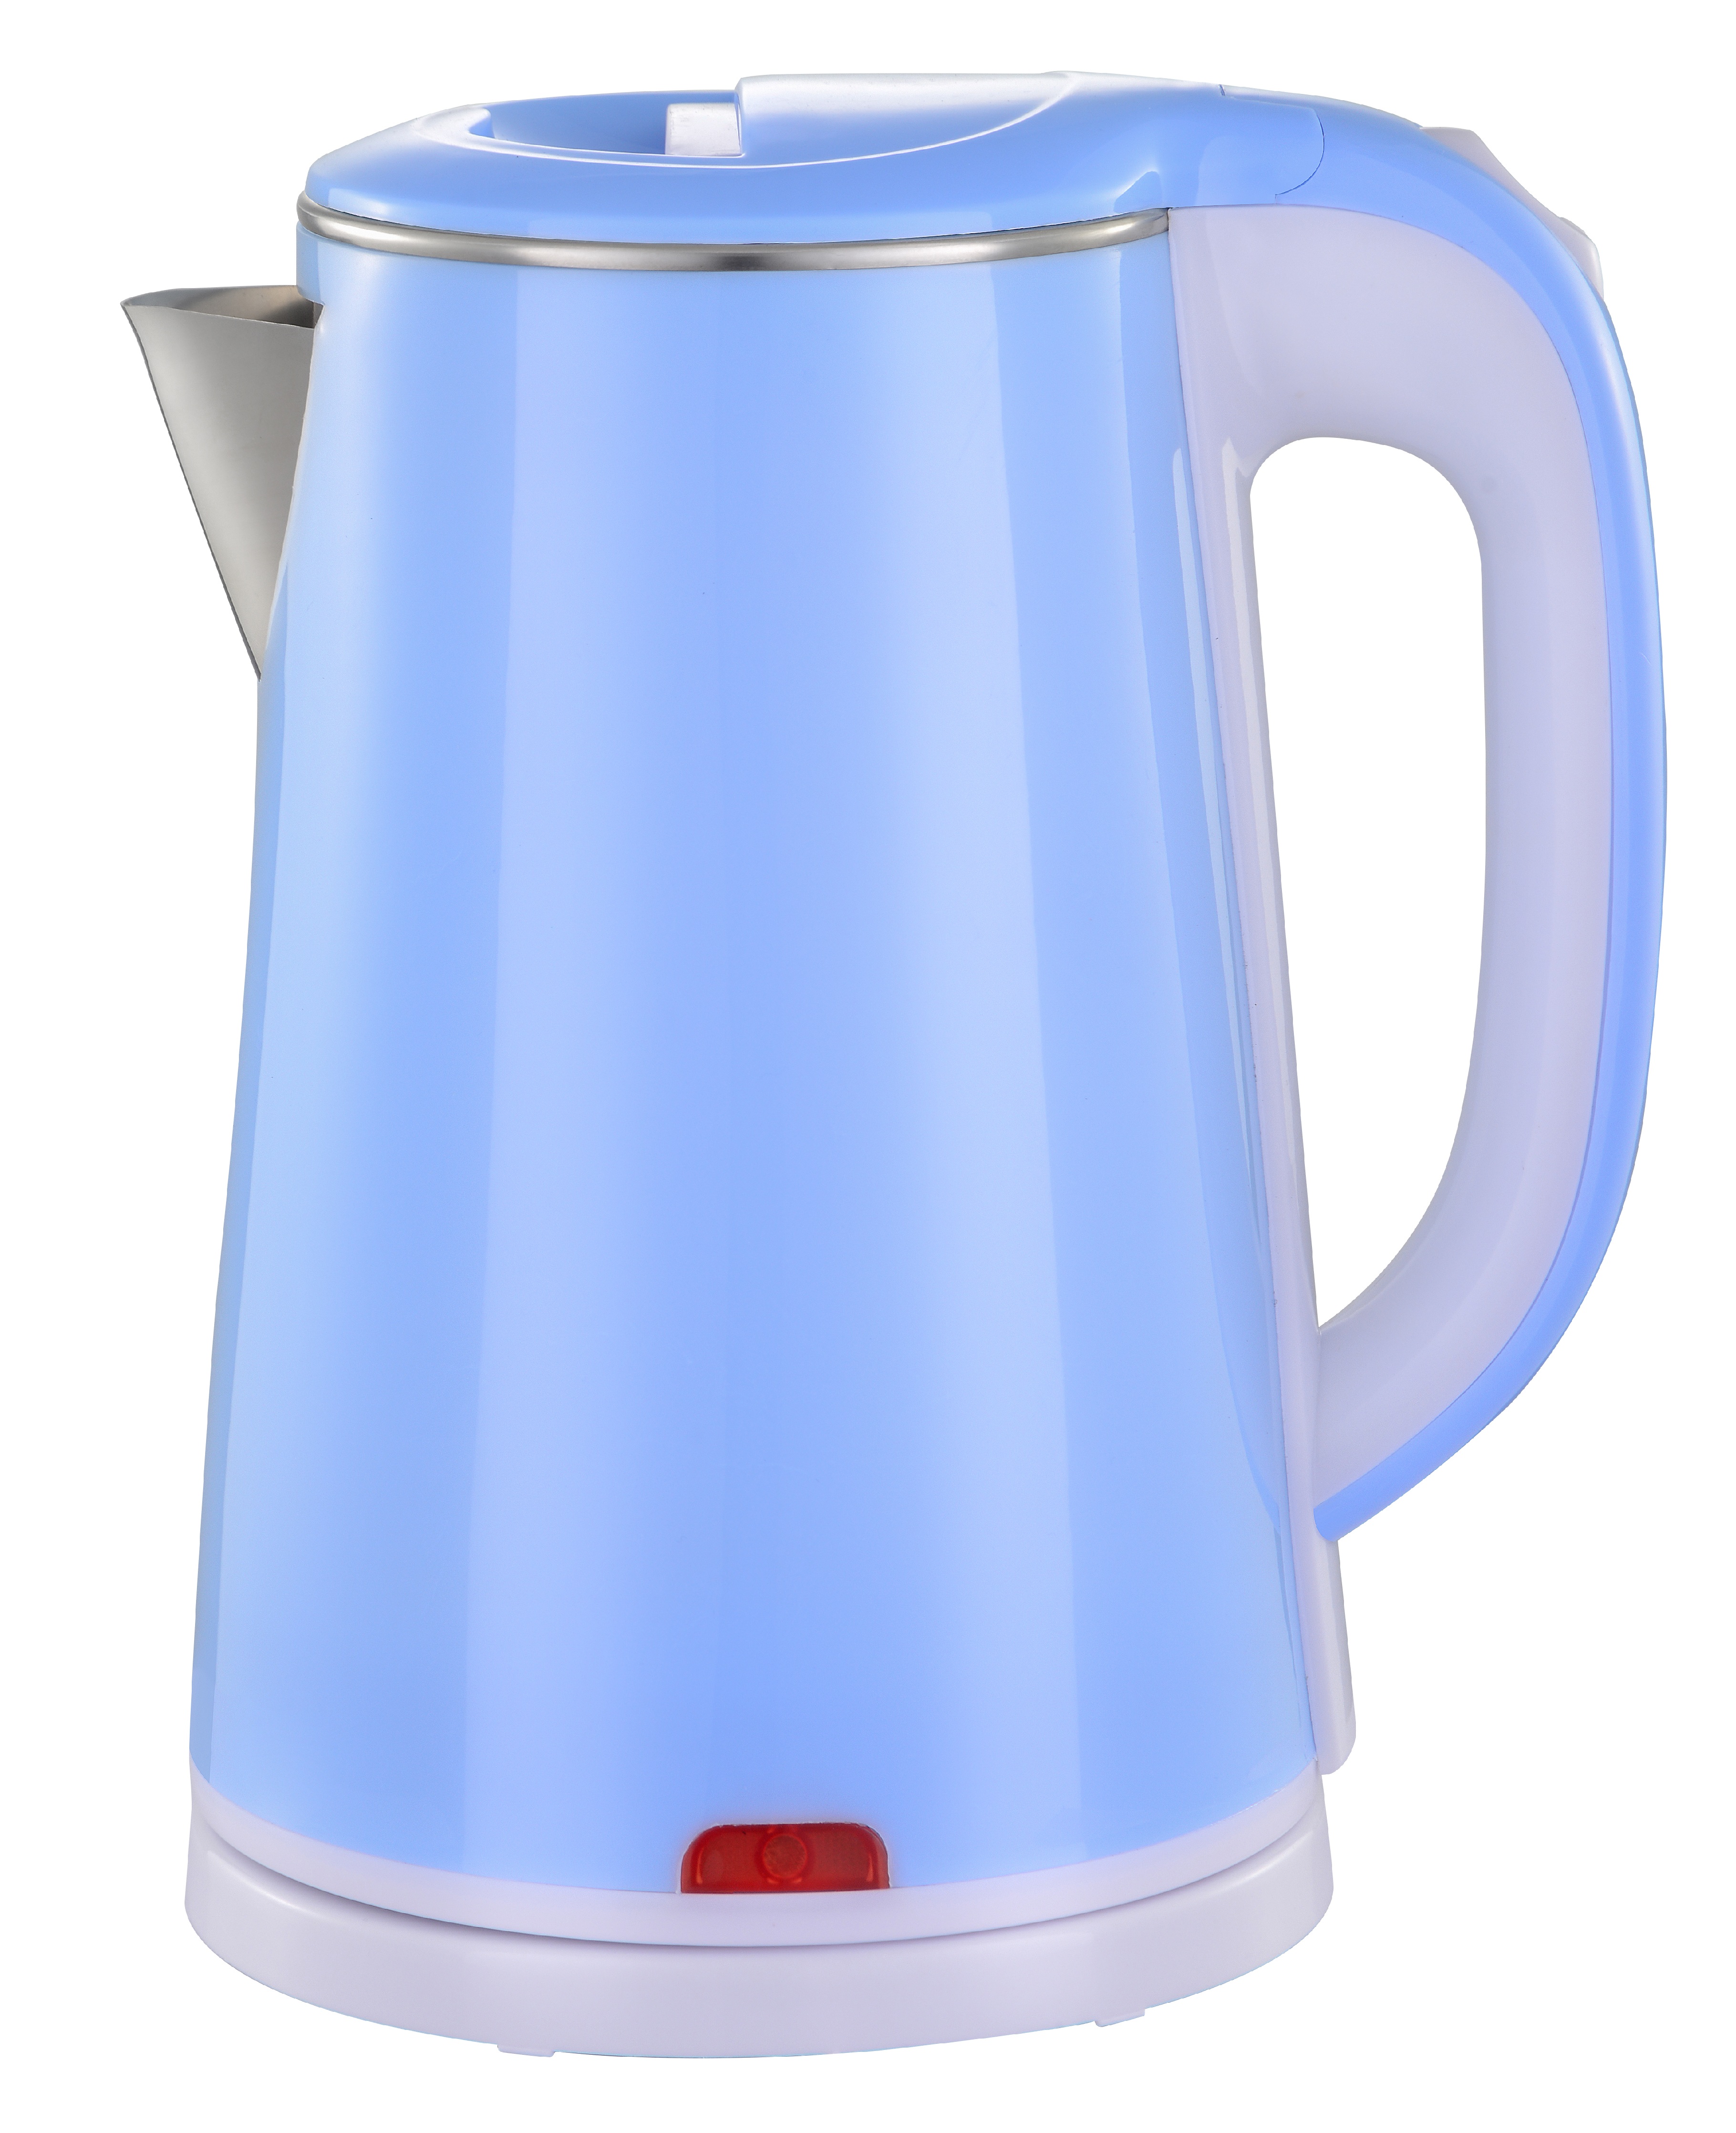 Чайник электрический MAXTRONIC MAX-319 2 л голубой чайник электрический maxtronic max yd 2013 1 7 л белый разно ный